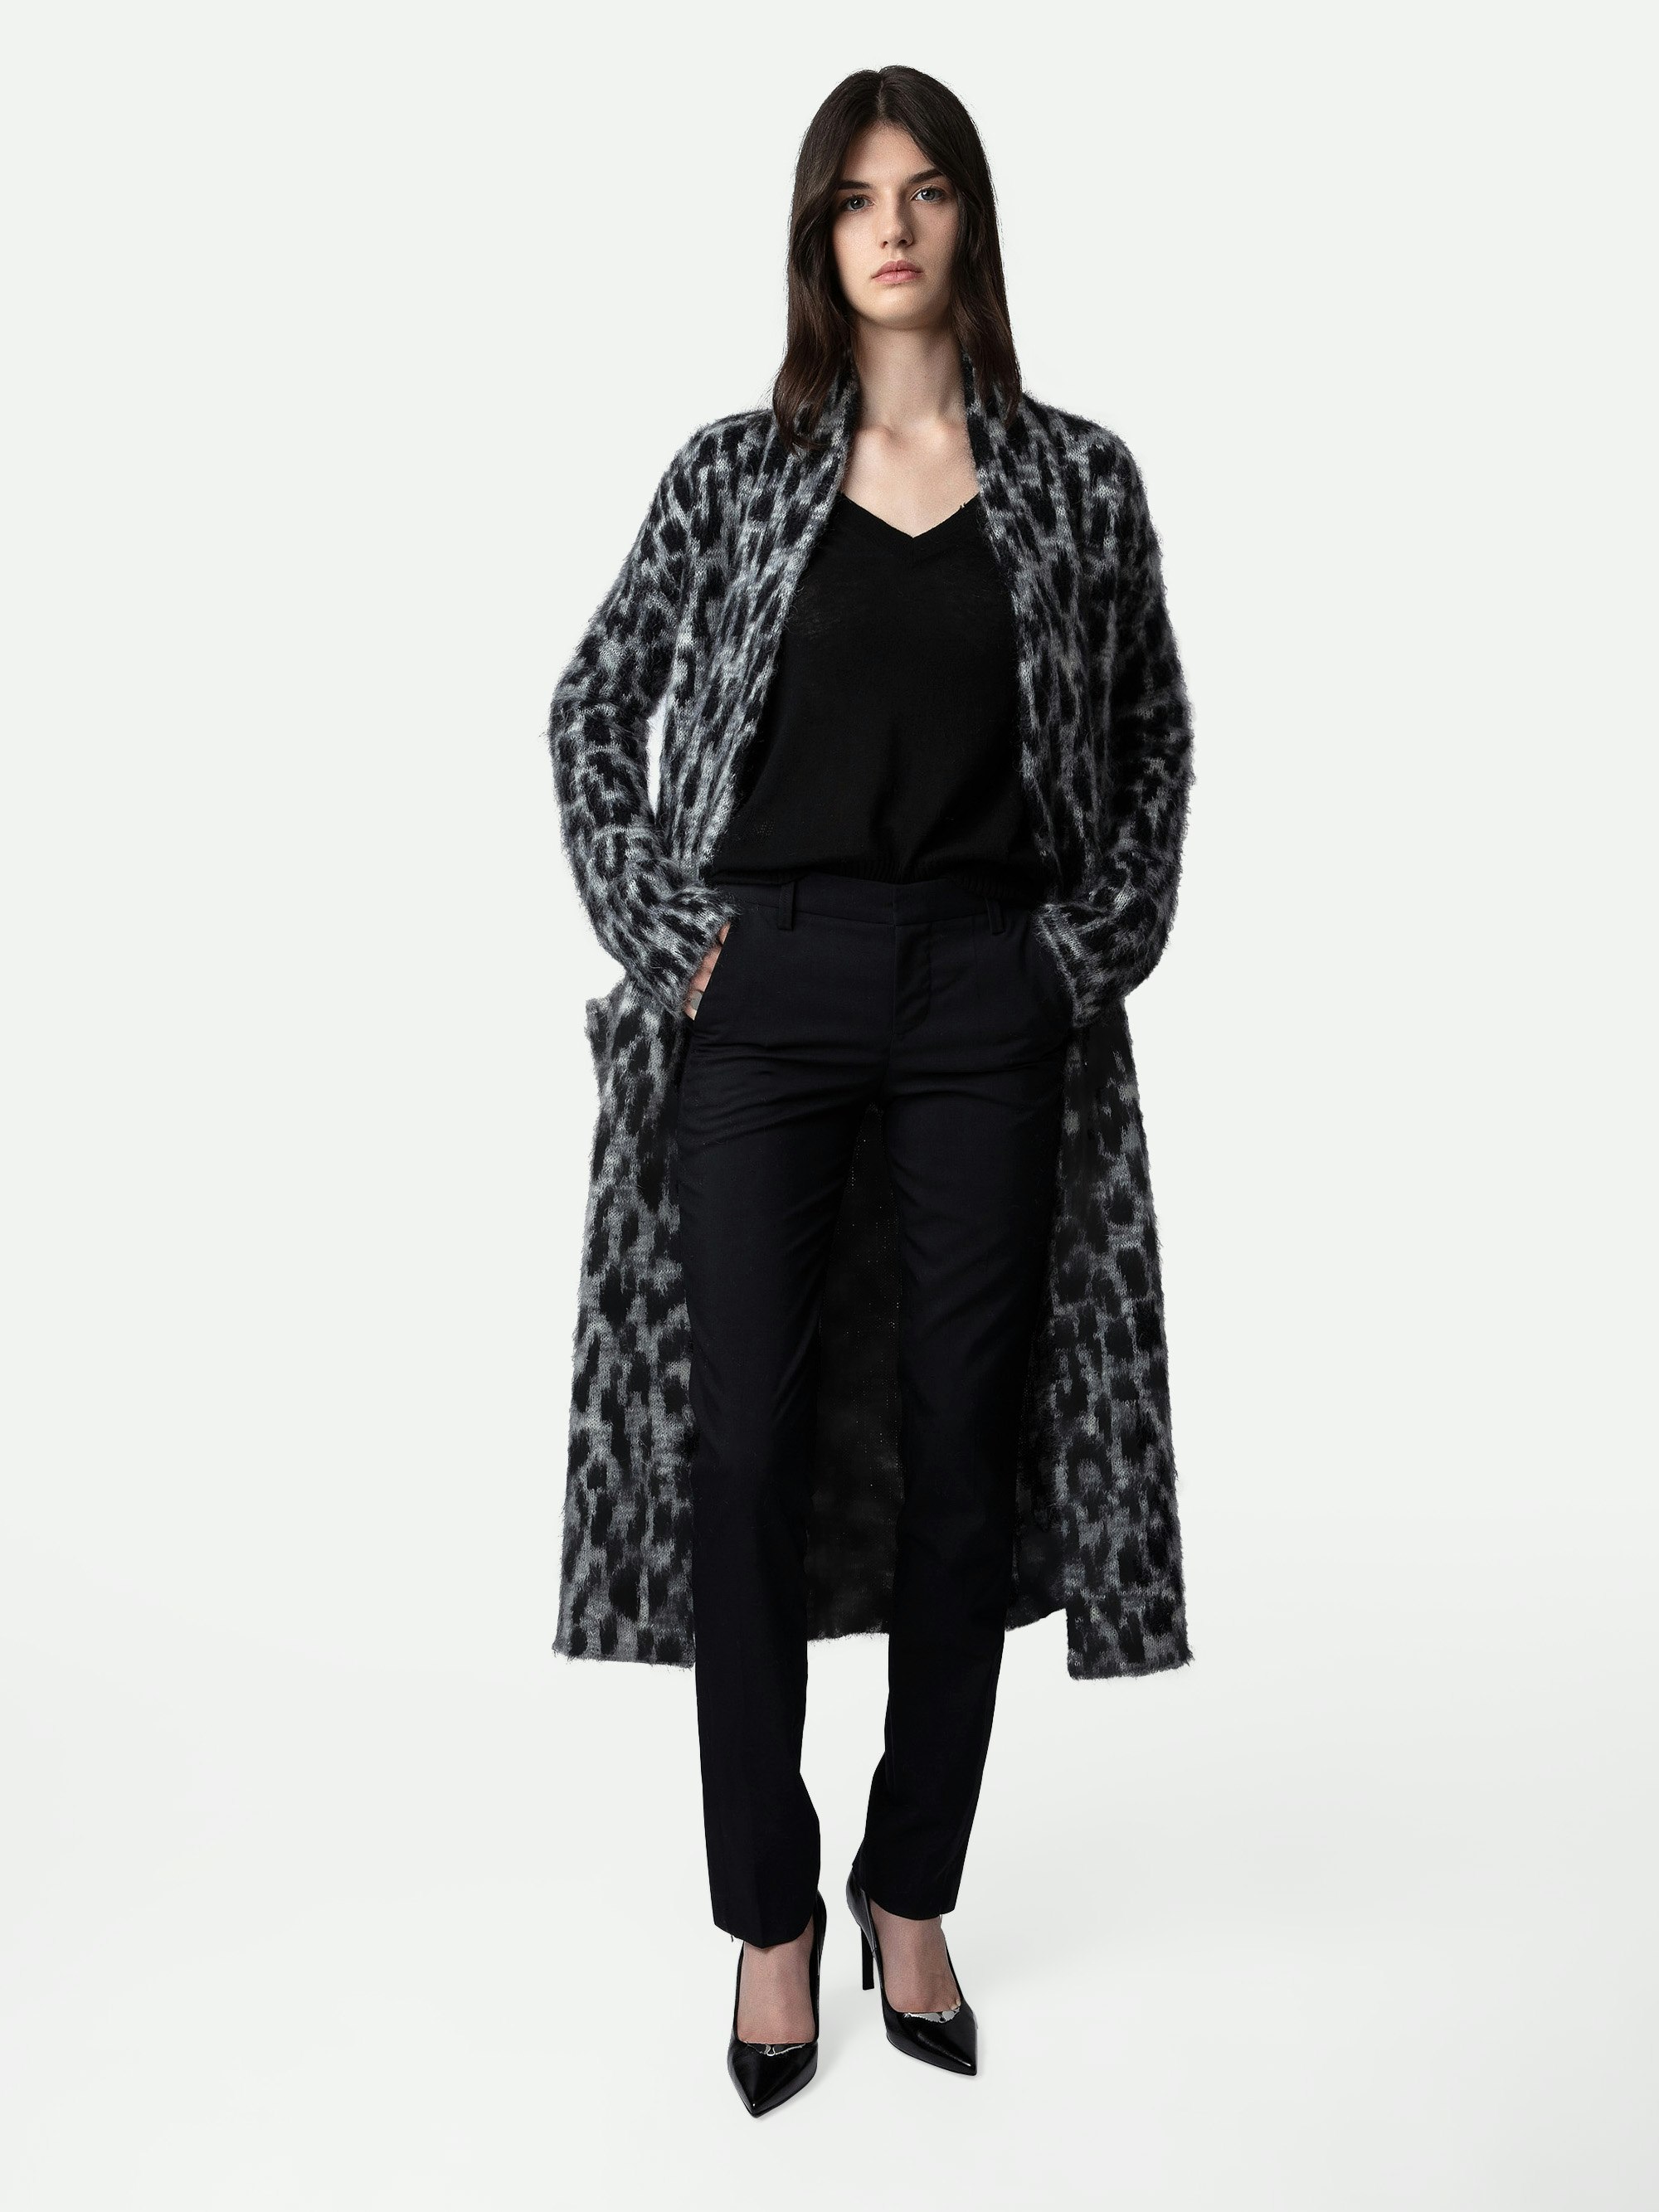 Cardigan Tilda Leopardato - Cardigan-cappotto lungo grigio da donna con stampa leopardata.